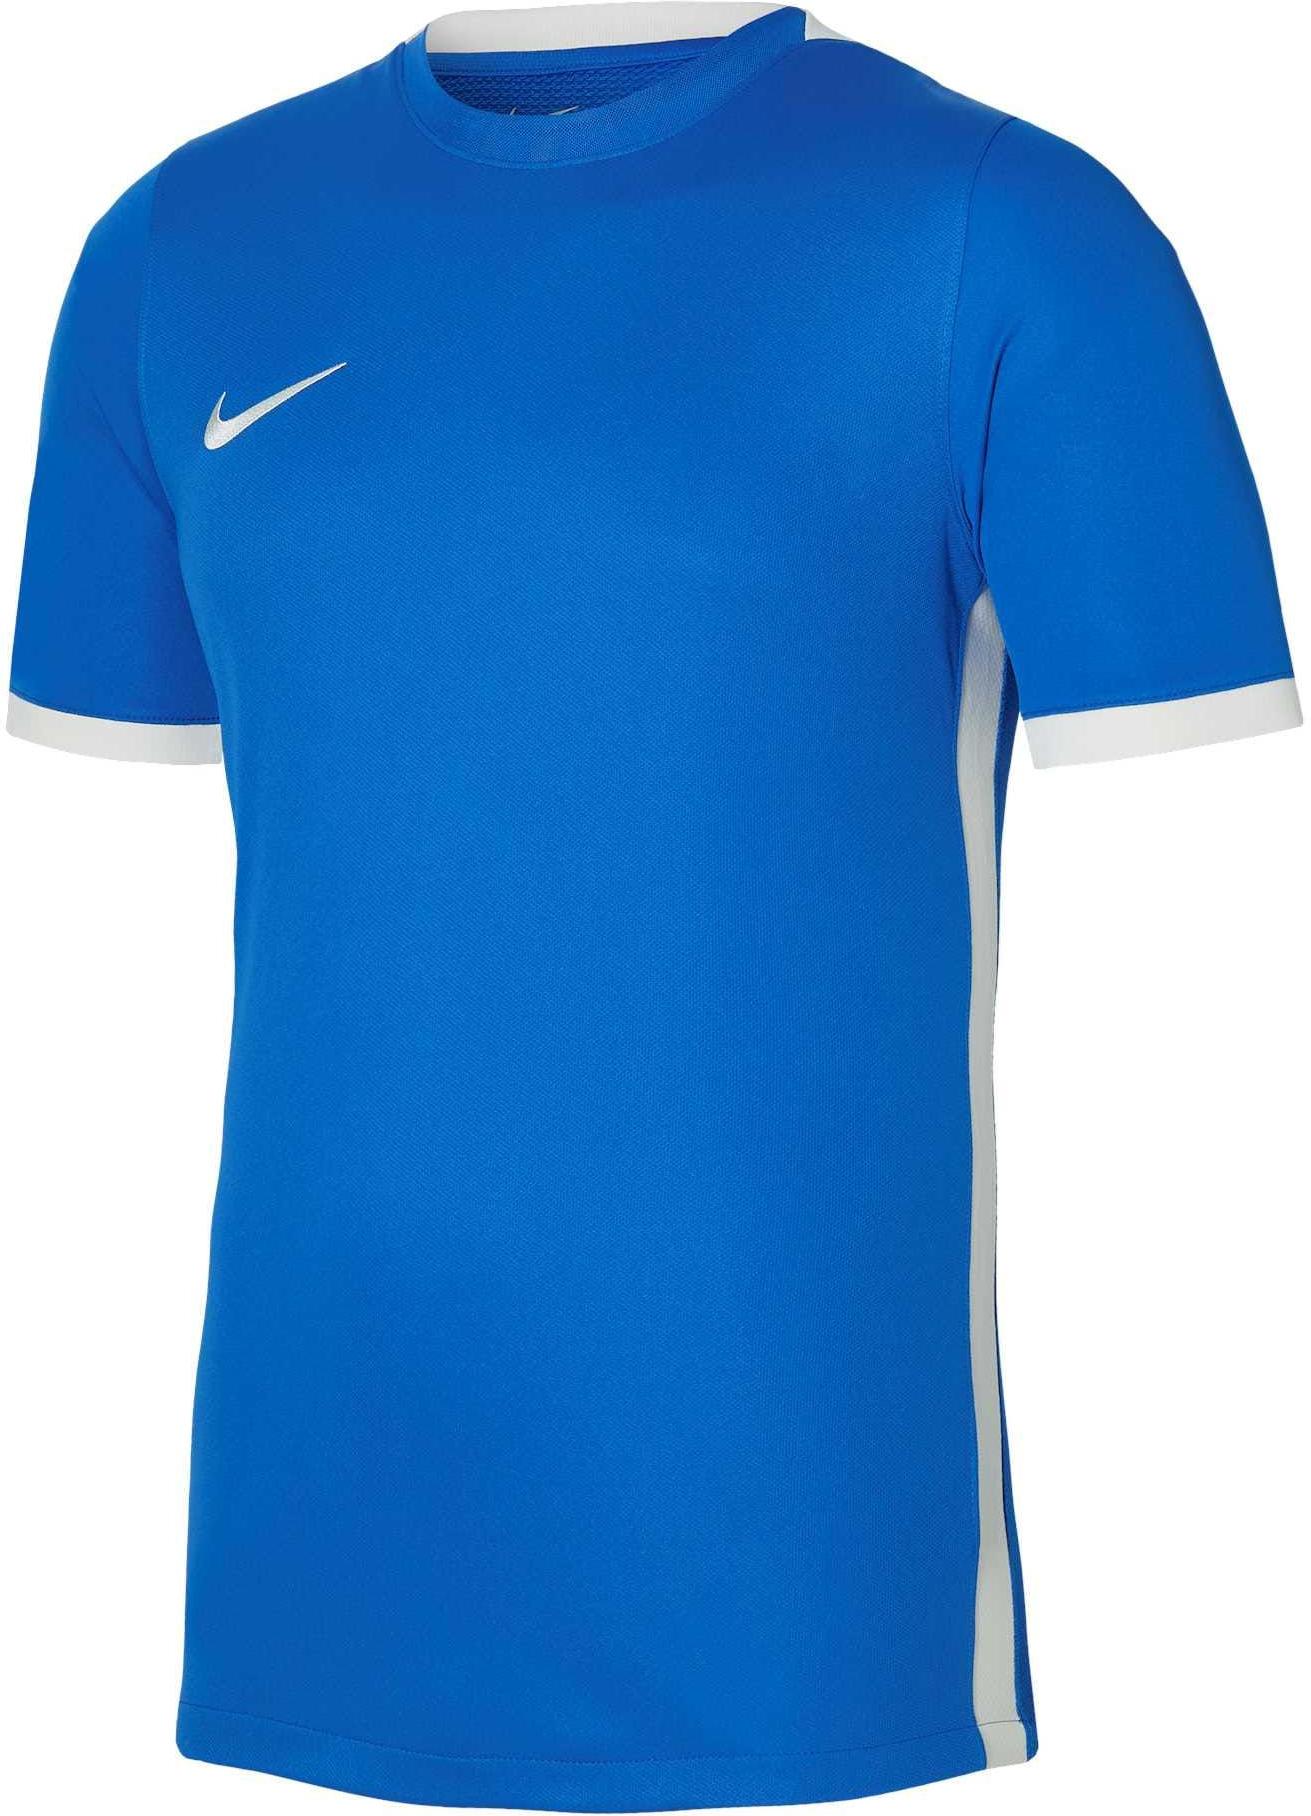 Trøje Nike Dri-FIT Challenge 4 Men s Soccer Jersey